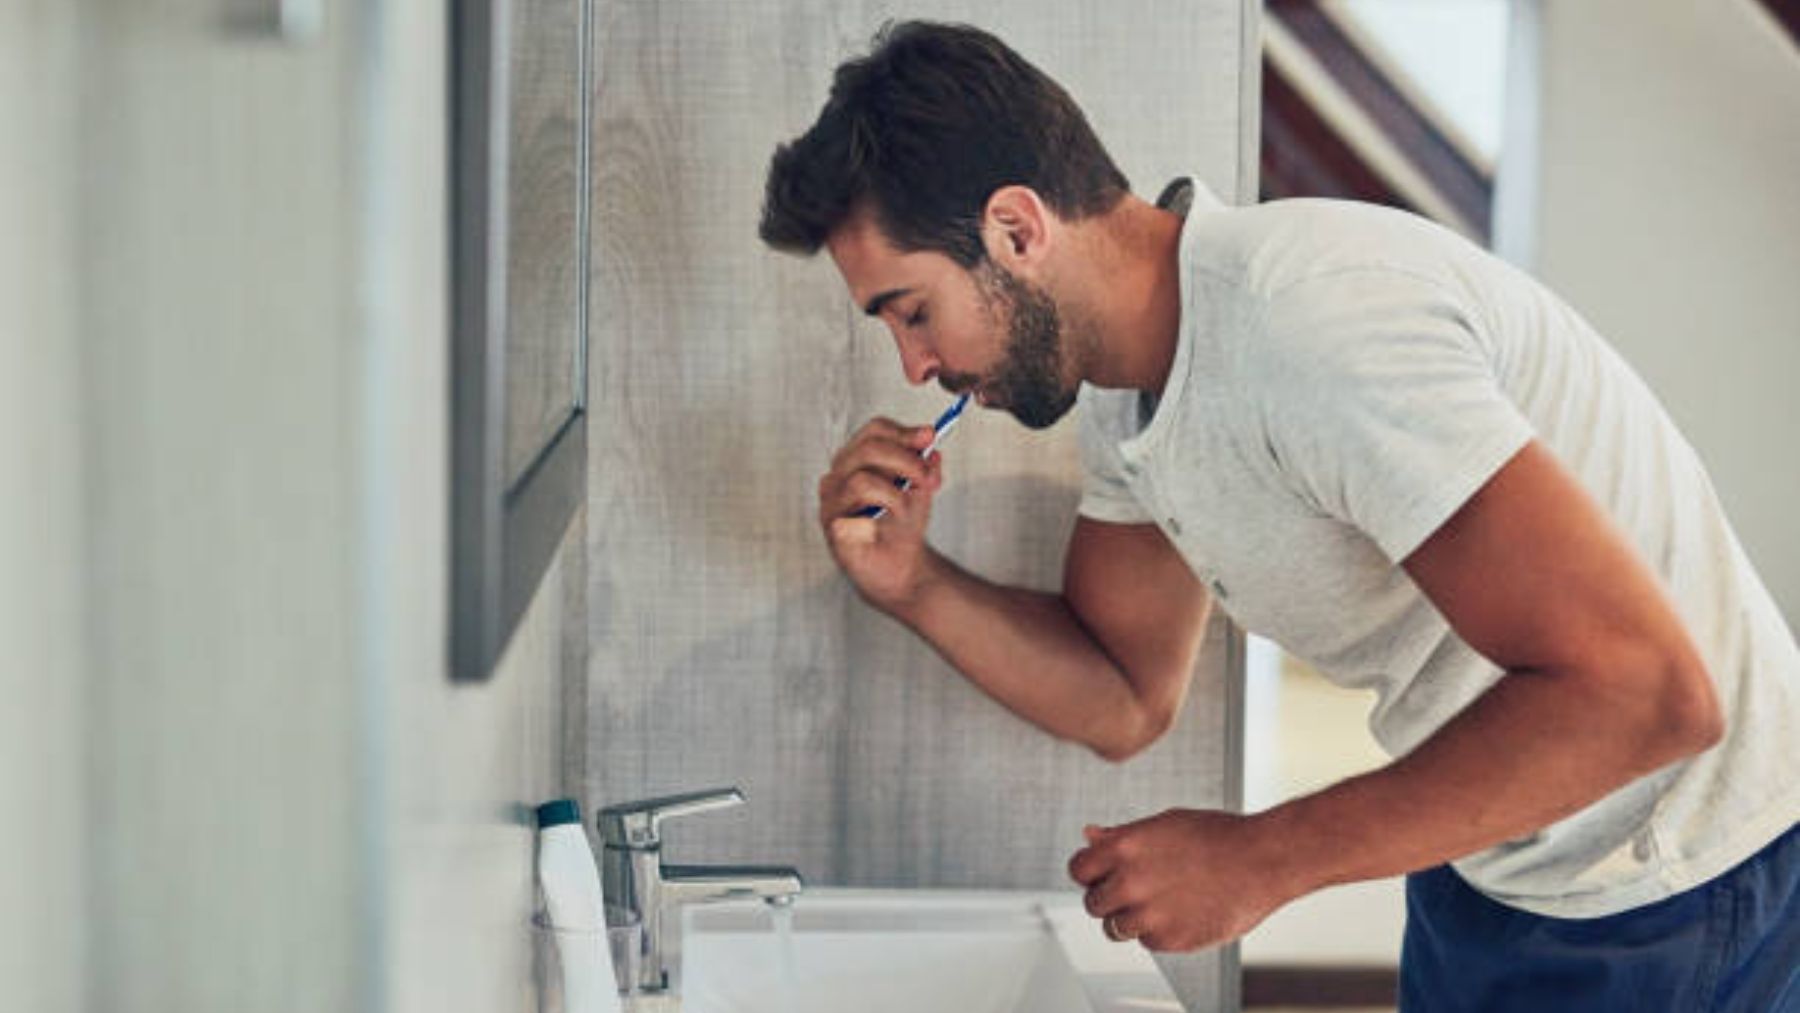 Descubre los malos hábitos de higiene que son más comunes